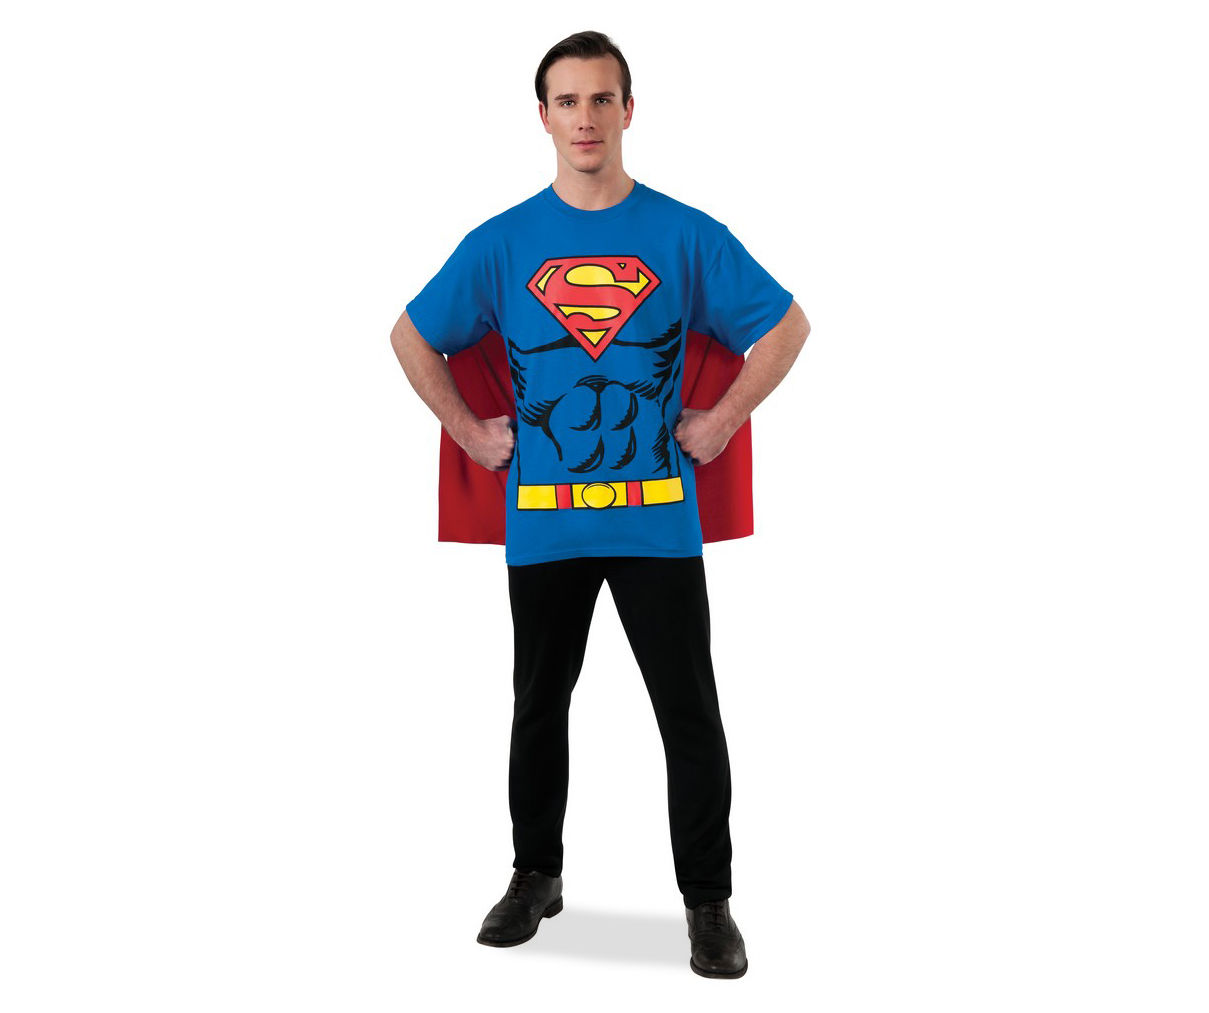 Adult Size M Superman T-Shirt Costume Kit